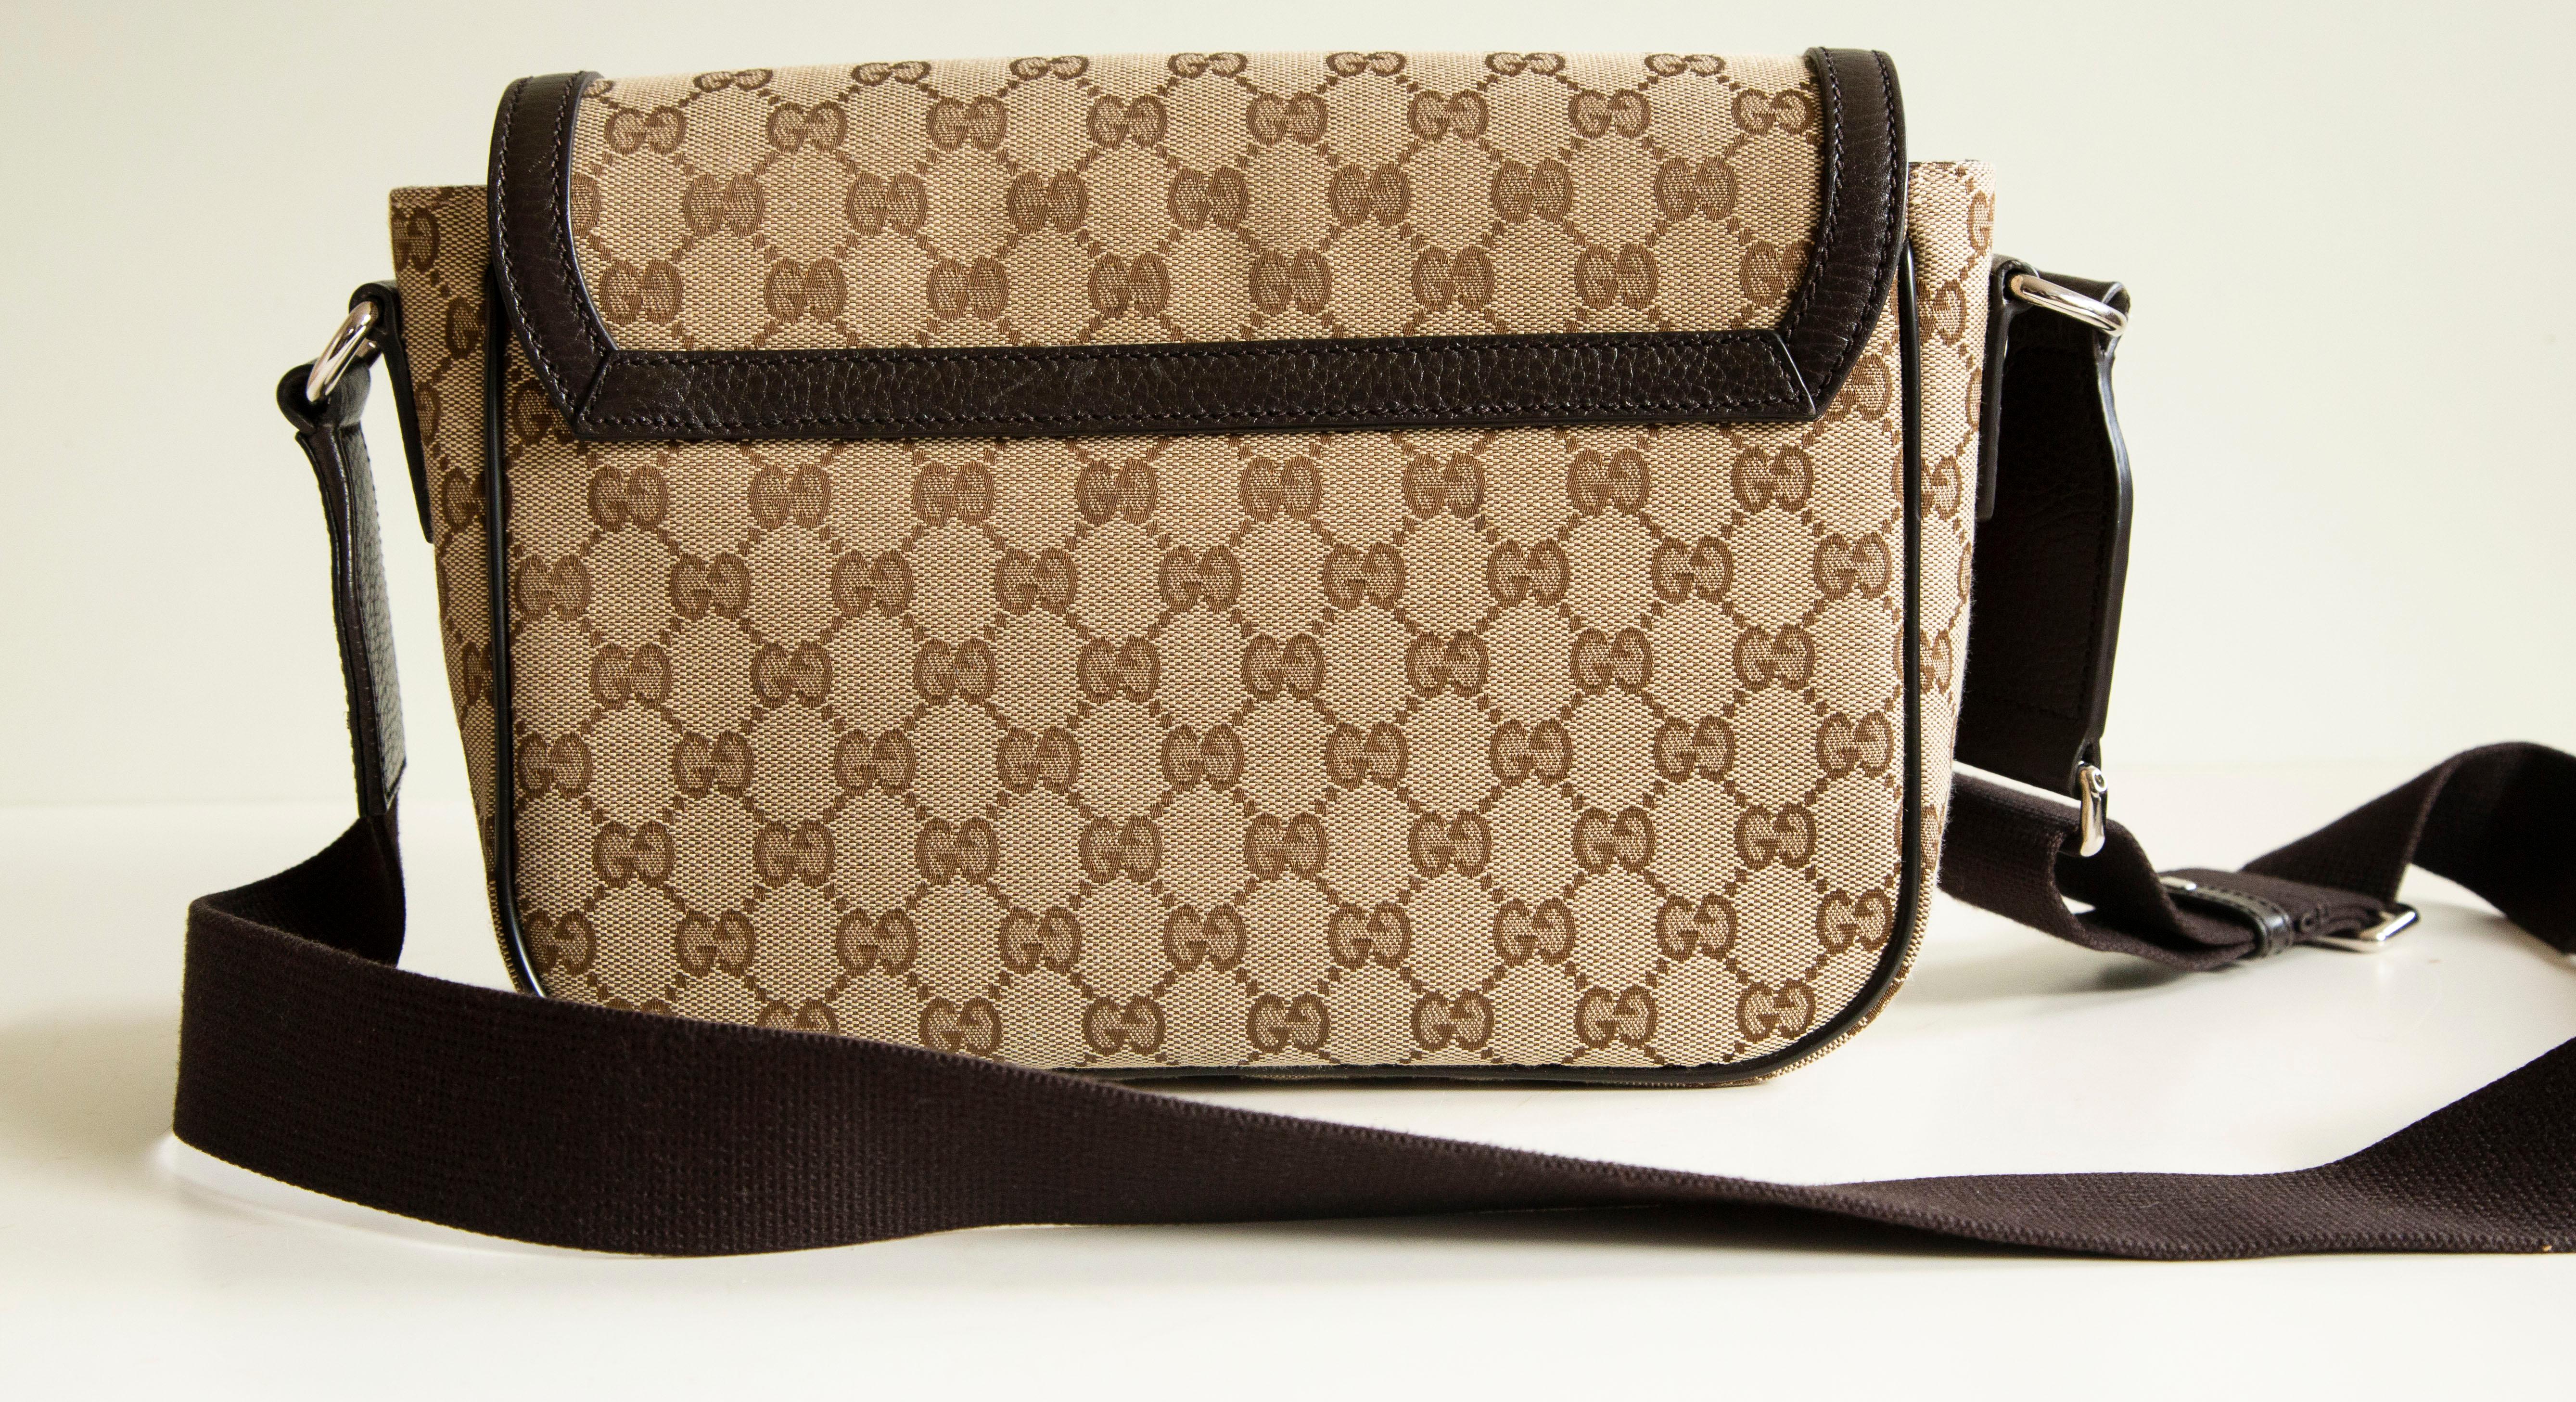 Unisex-Messenger-Tasche von Gucci aus braunem und beigem Canvas mit braunem Lederbesatz. Das Äußere der Tasche besteht aus GG-Gewebe, die Verzierungen aus braunem Leder und silberfarbene Beschläge. Der Innenraum ist mit braunem Stoff ausgekleidet